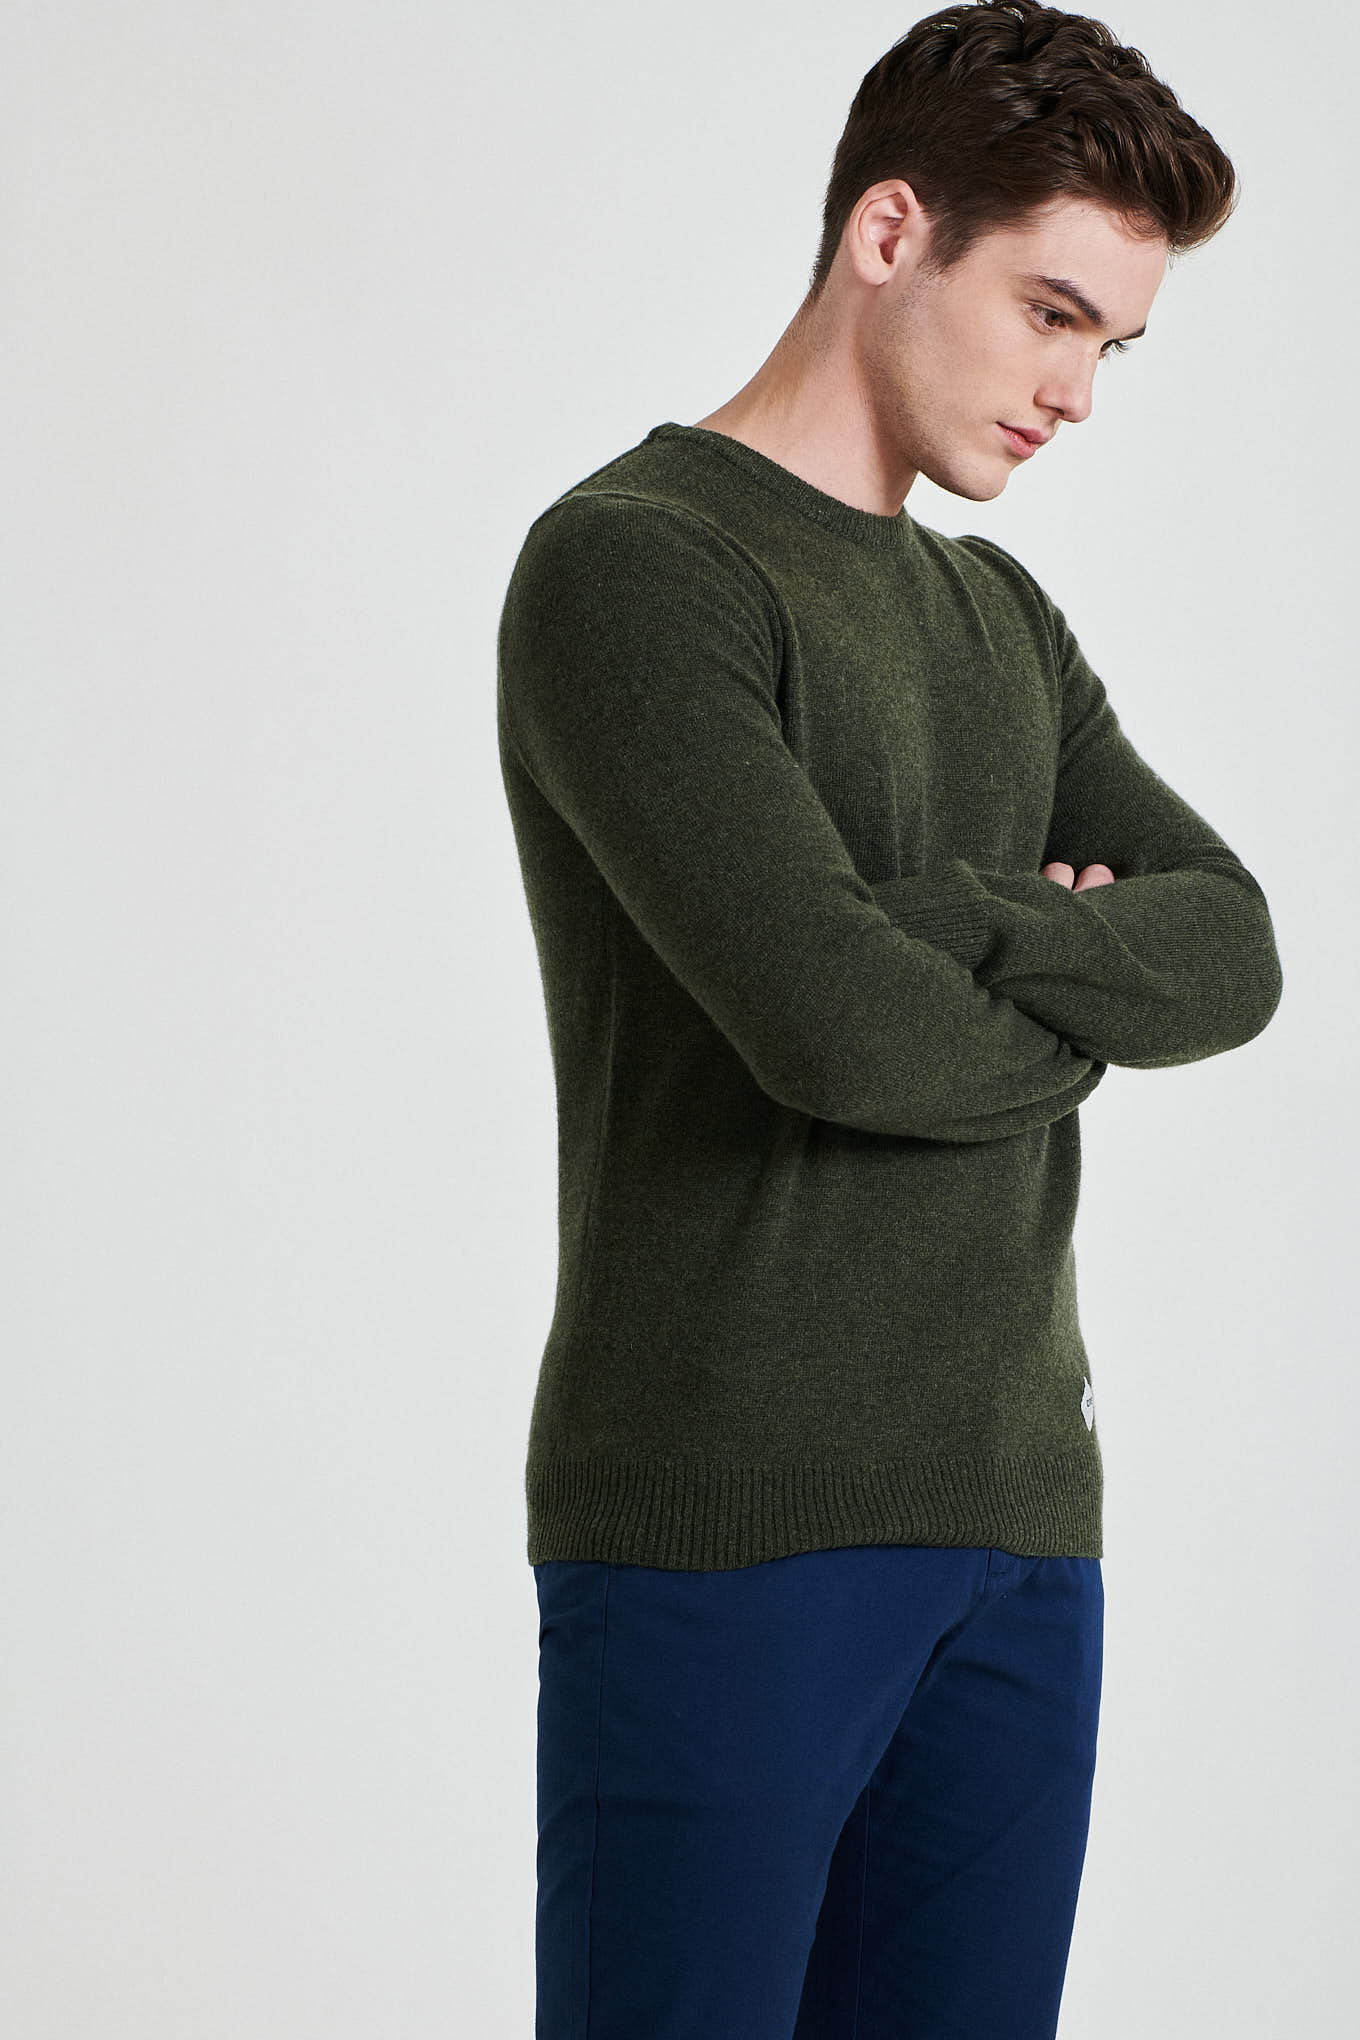 Sweater Green Sport Man